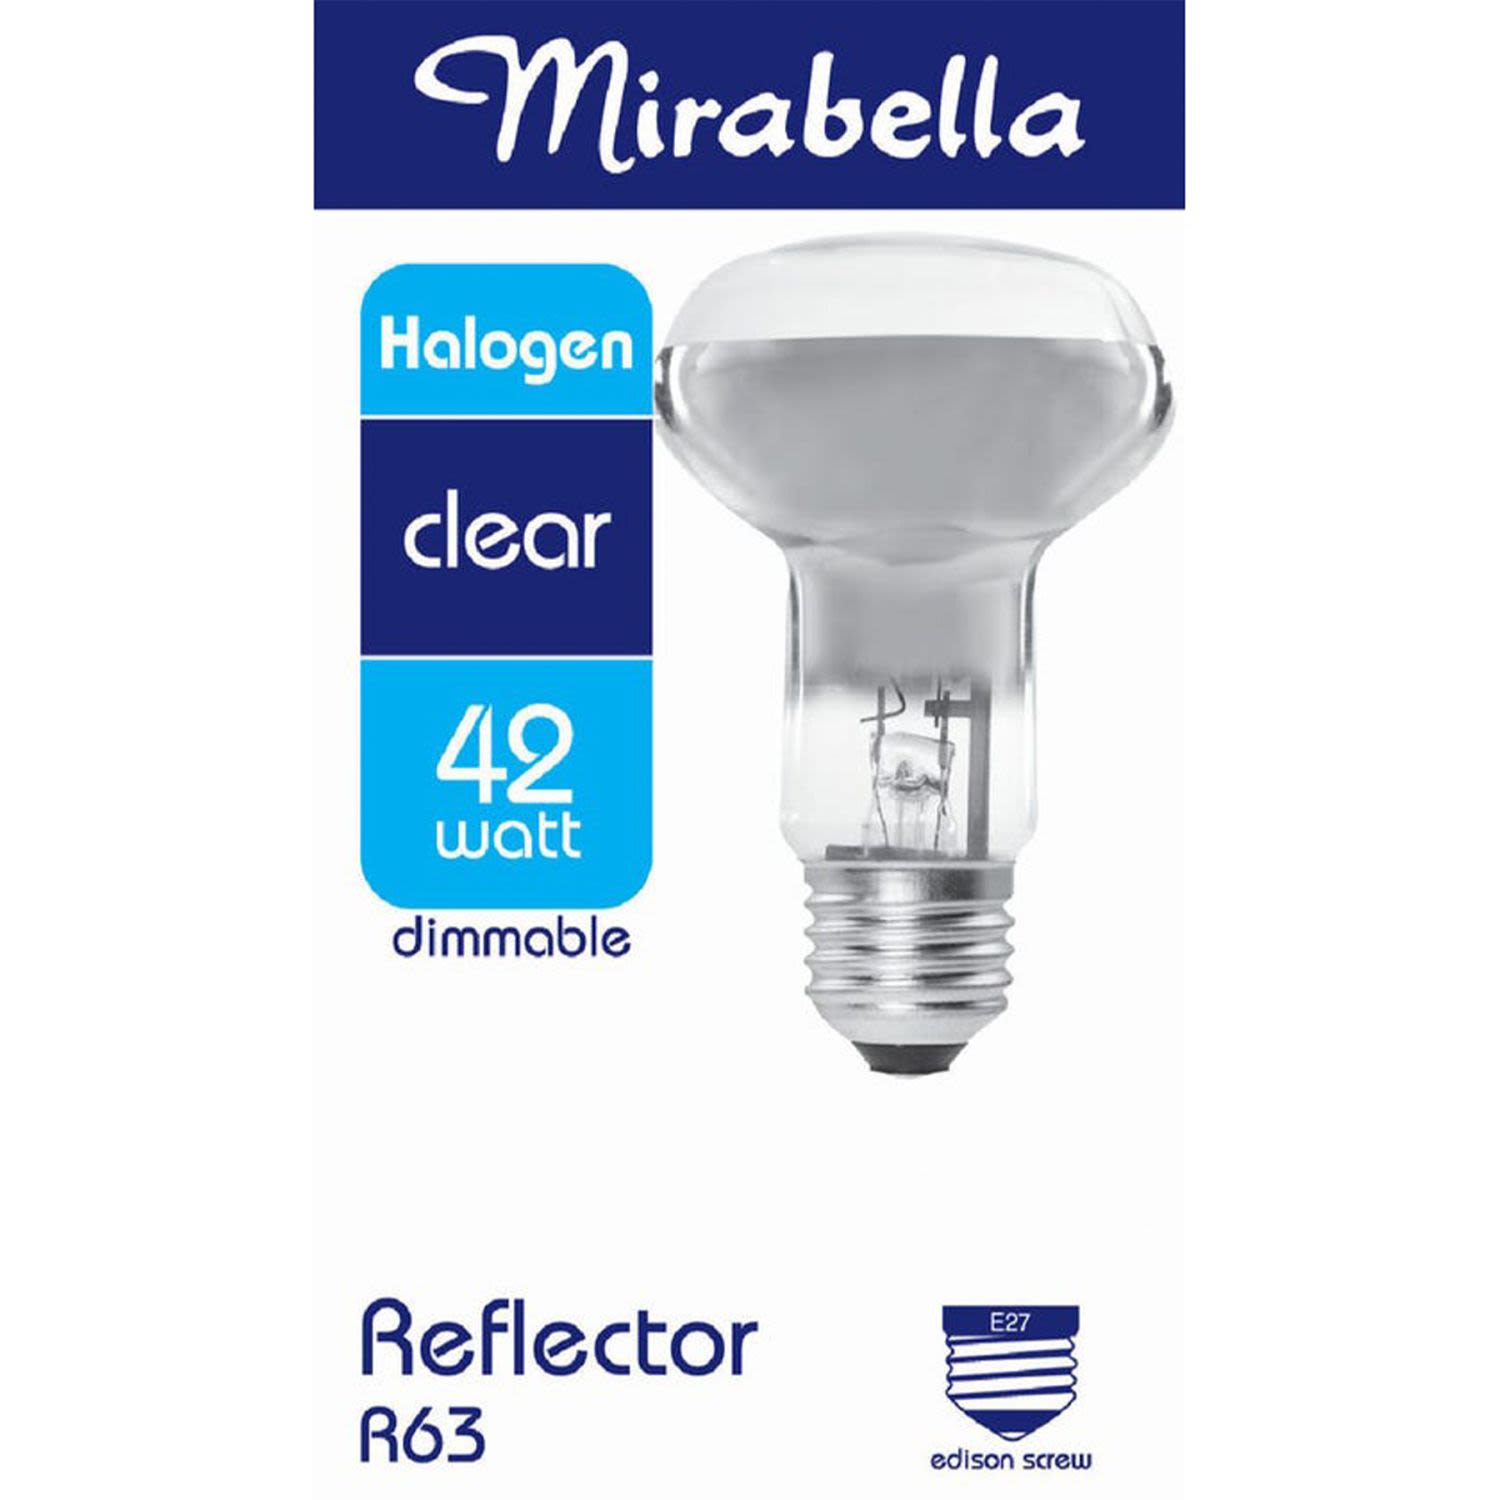 Mirabella Halogen Reflector Globe R63 42W ES Clear, 1 Each